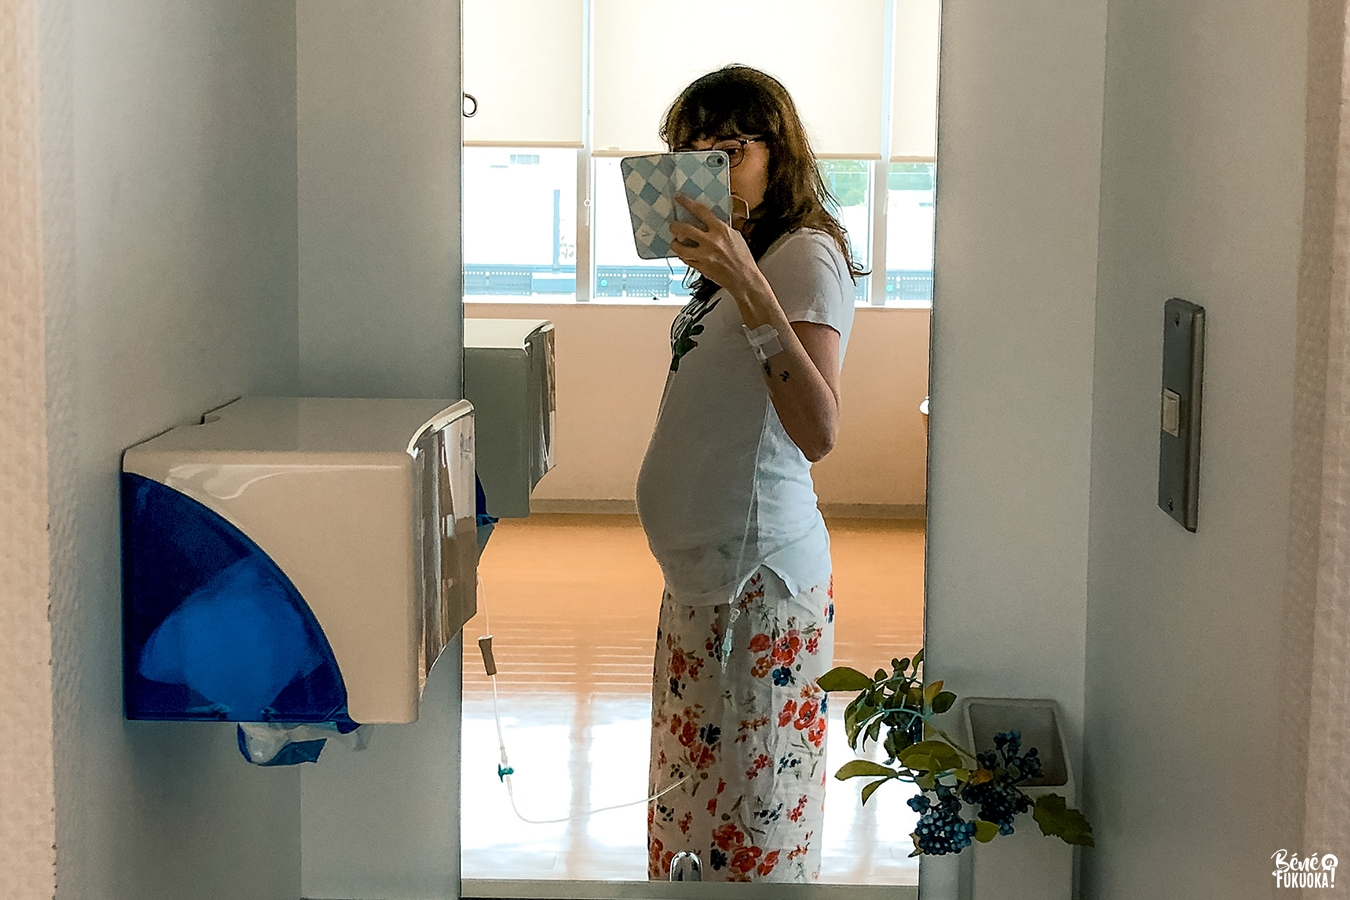 27 semaines de grossesse au Japon